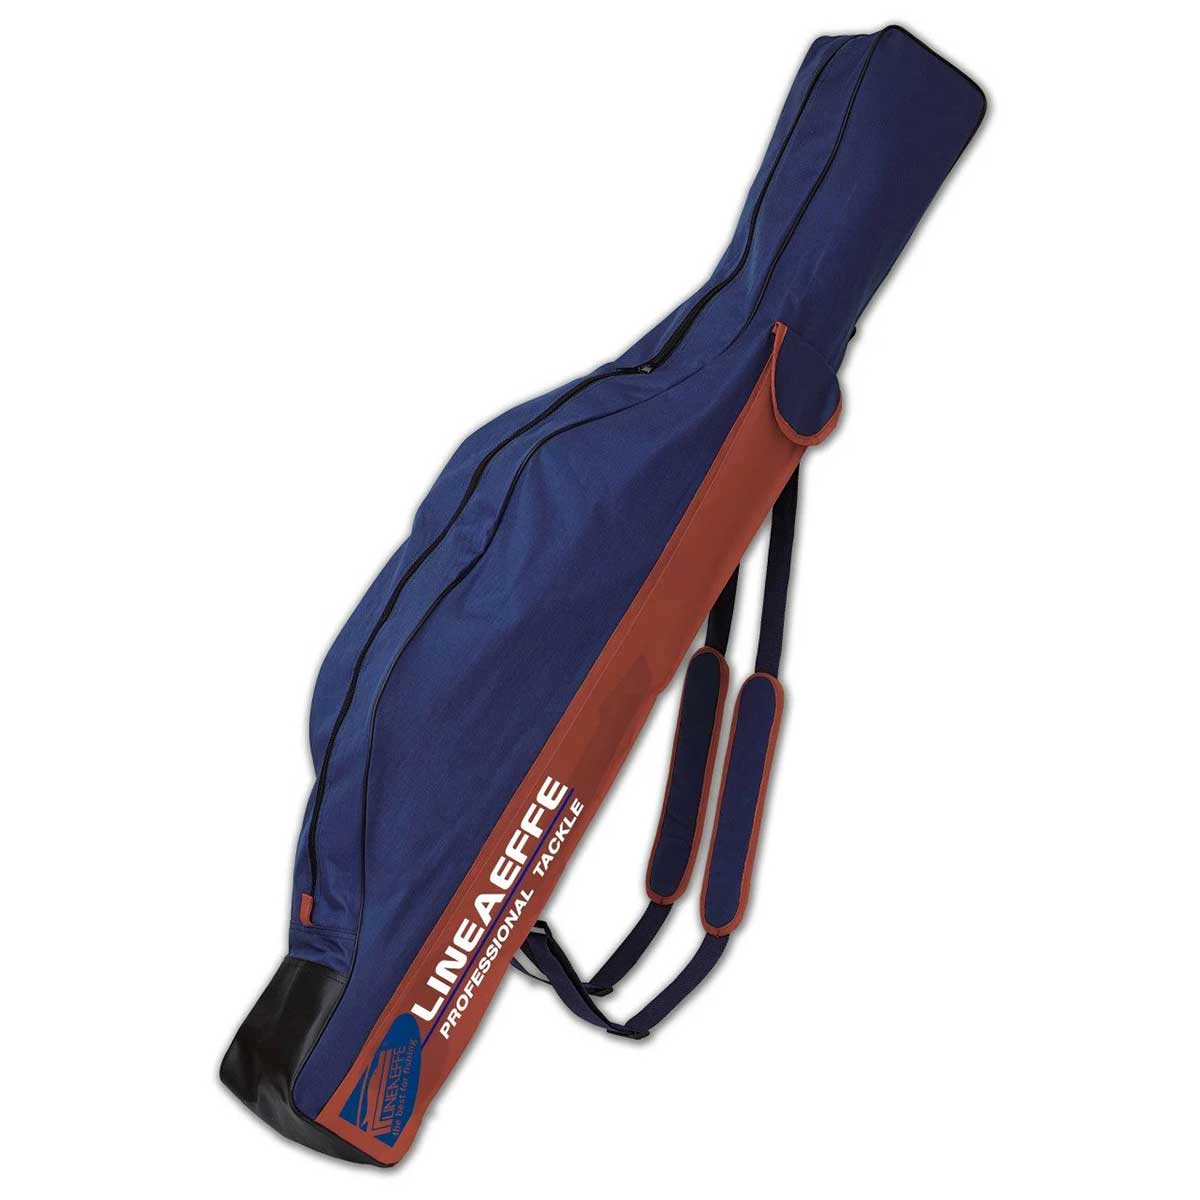 Lineaeffe Fodero Pro Cordura 175 cm Kamış Çantası,lineaeffe kalitesinde teleskobik ve surf kamışlarınızı muhafaza edebileceğiniz kamış çantası